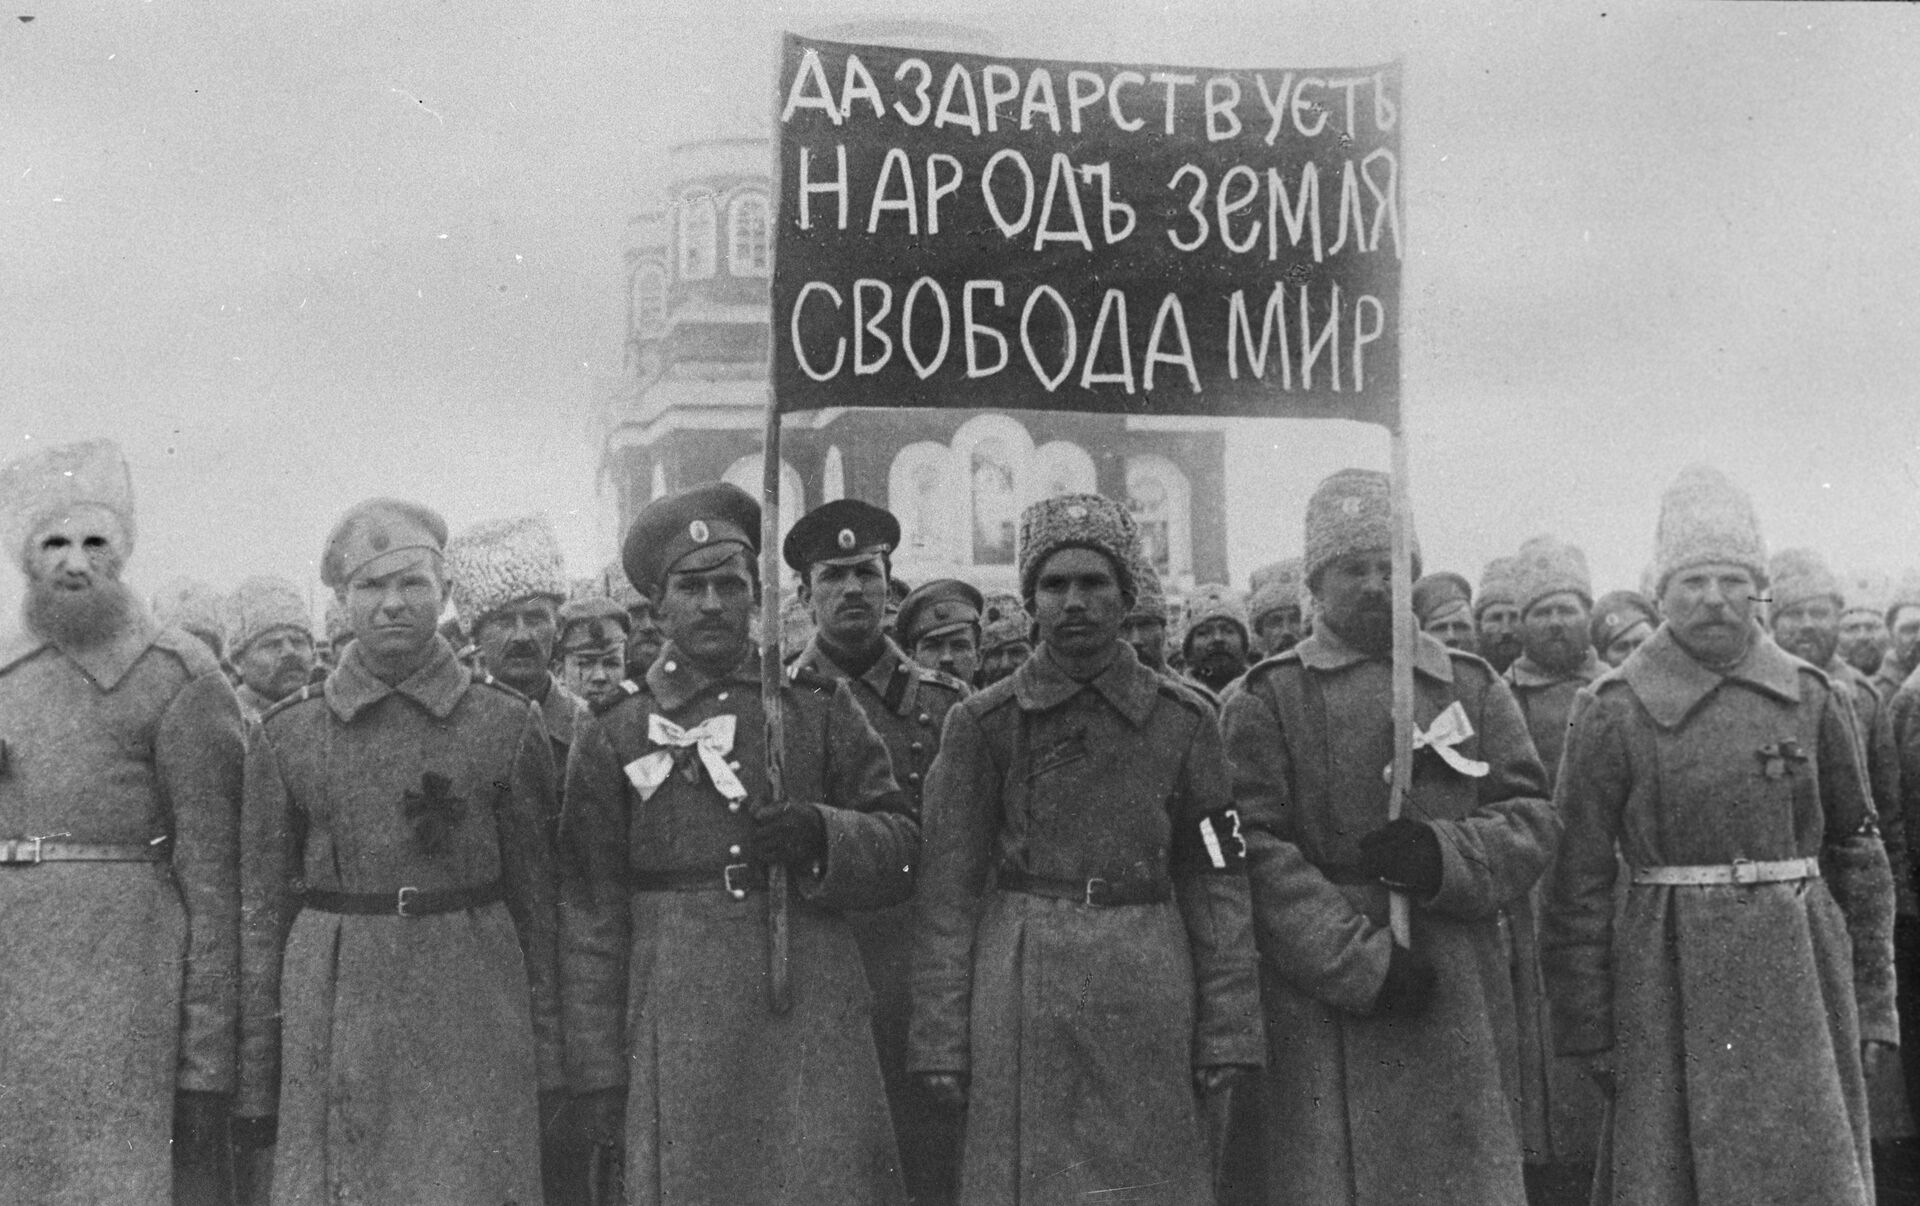 Реферат: Революция 1917 года в Москве